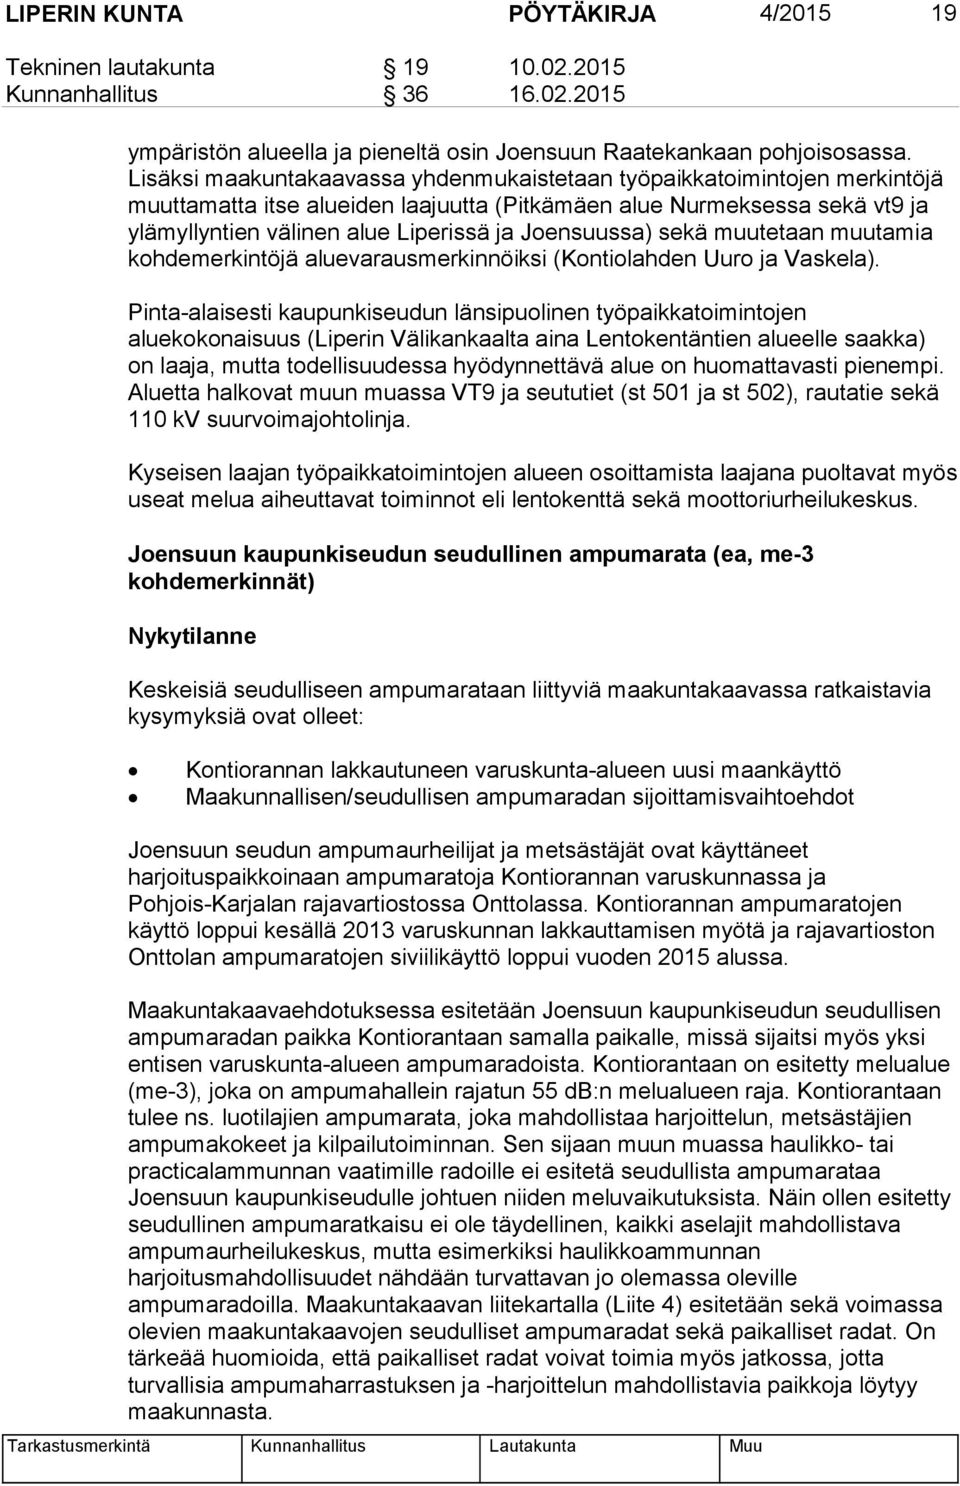 Joensuussa) sekä muutetaan muutamia kohdemerkintöjä aluevarausmerkinnöiksi (Kontiolahden Uuro ja Vaskela).